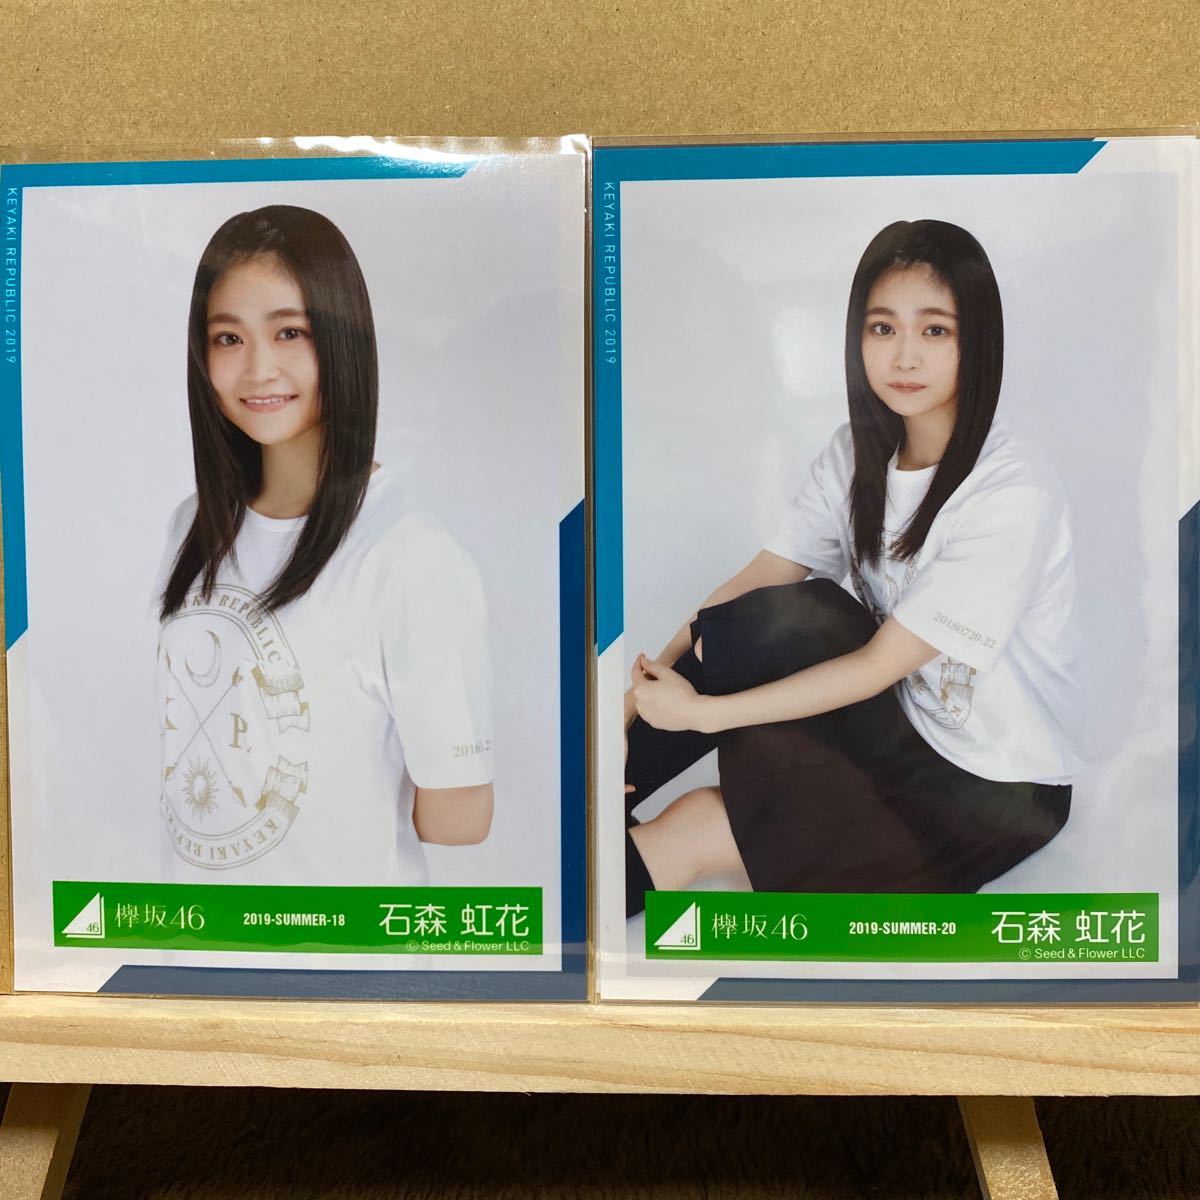 欅坂46 欅共和国2018Tシャツ衣装 生写真 石森虹花 チュウ、座り_画像1